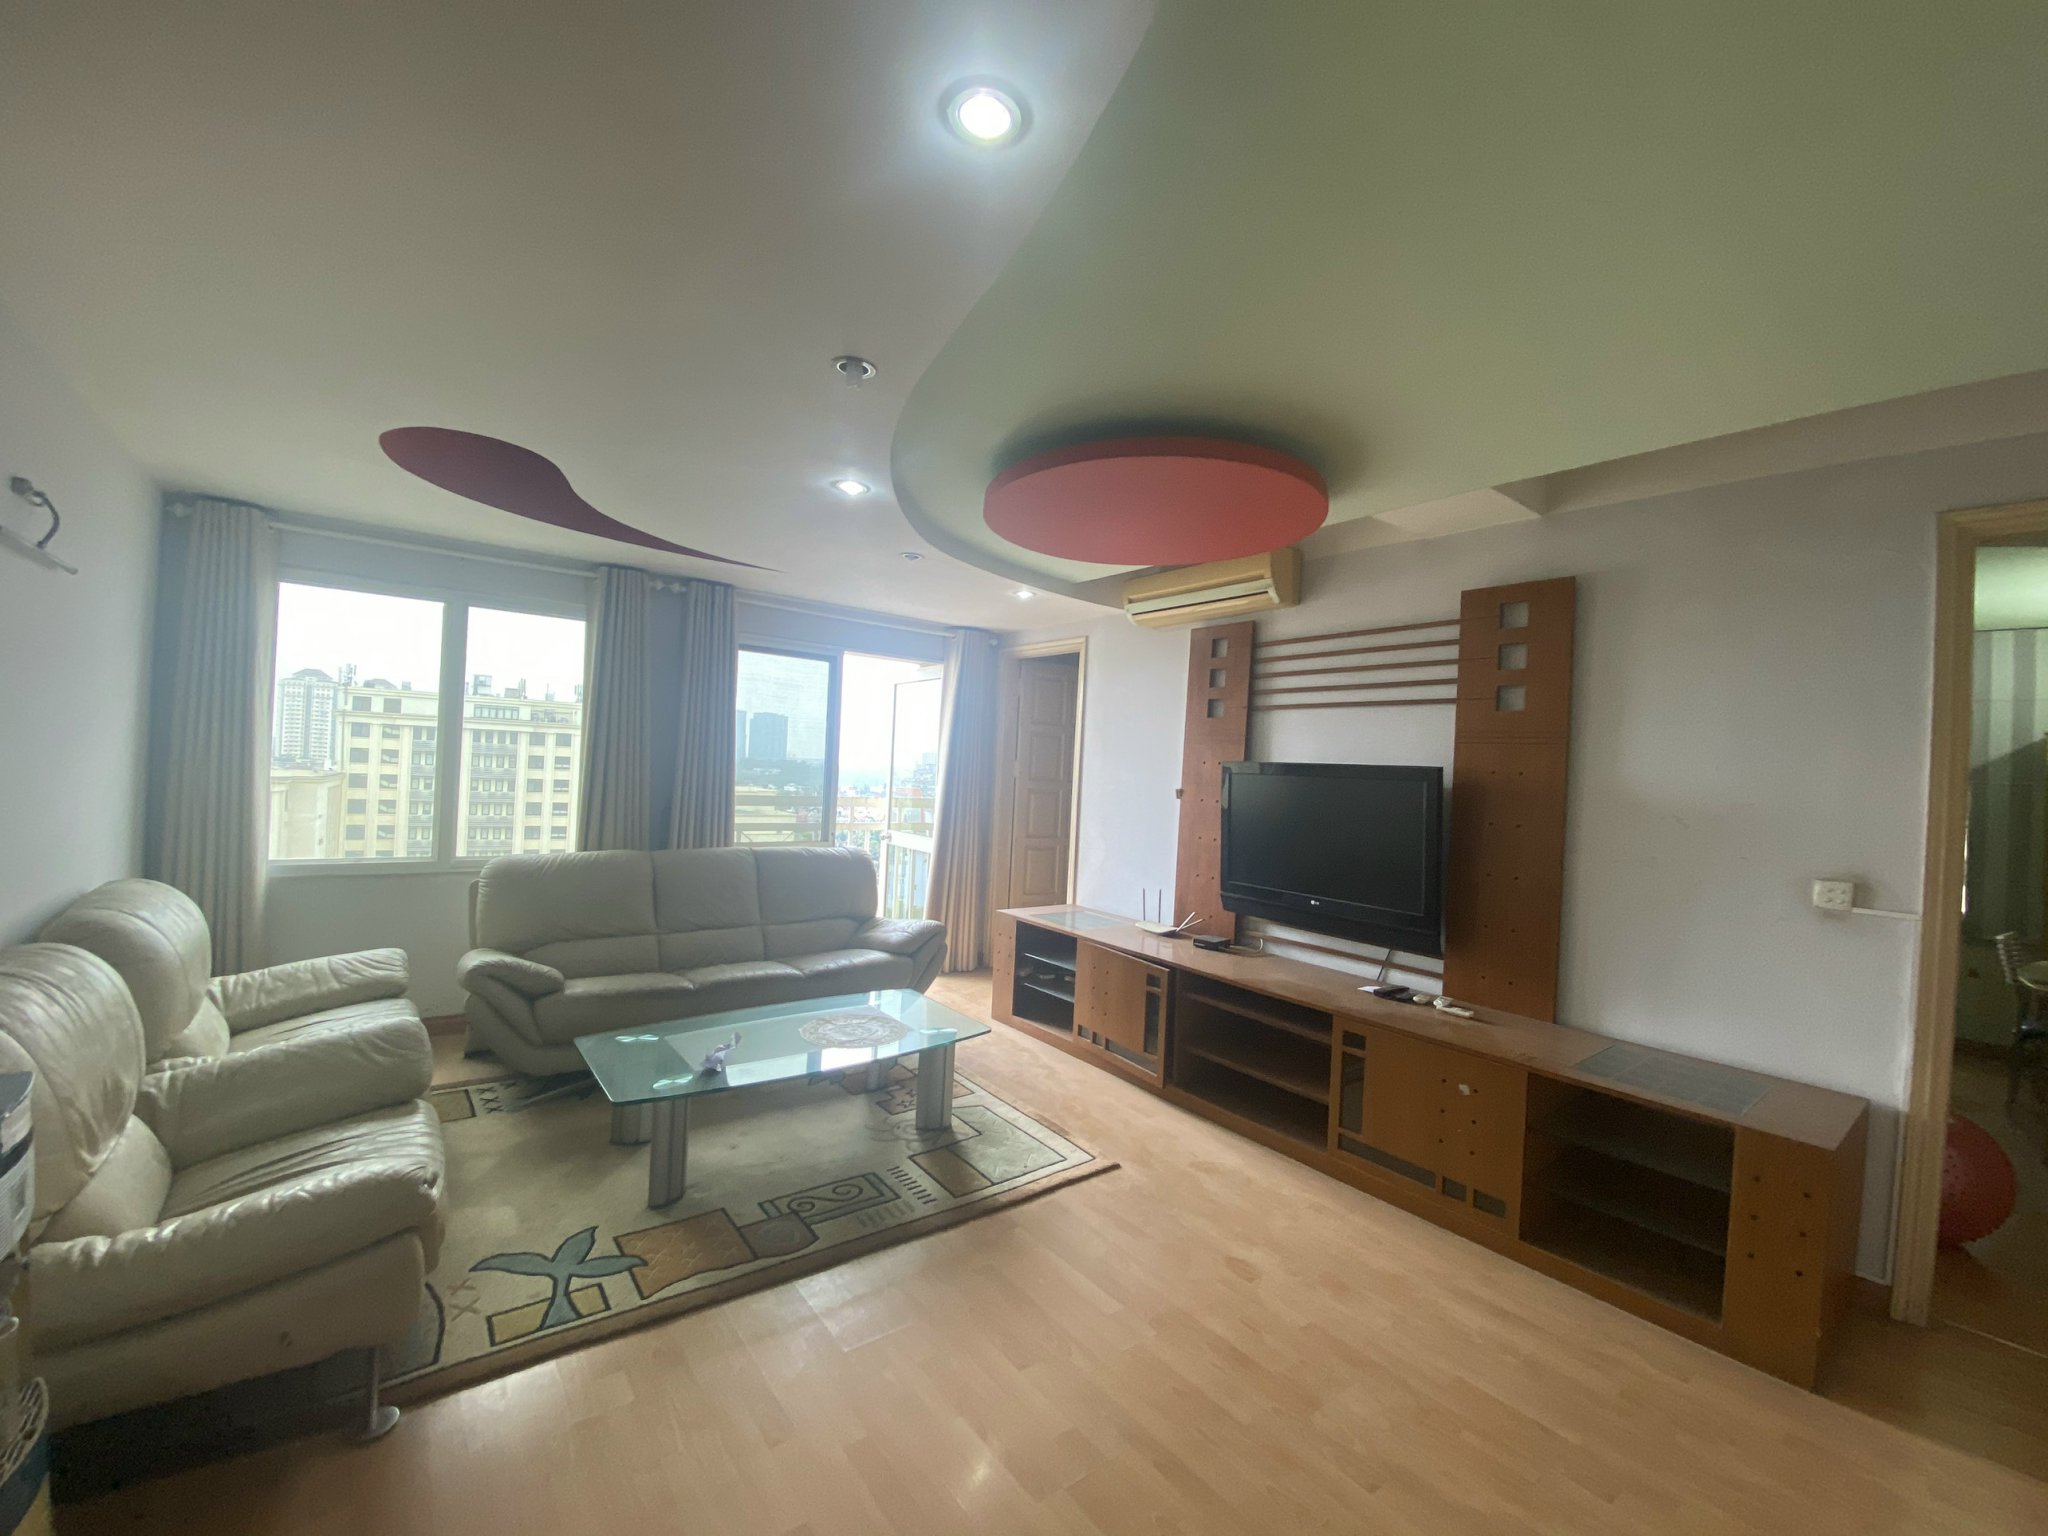 Chính chủ cần bán căn hộ G2 ciputra KĐT Nam Thăng Long, dt 150m2, nguyên bản 4 ngủ, nội thất đẹp